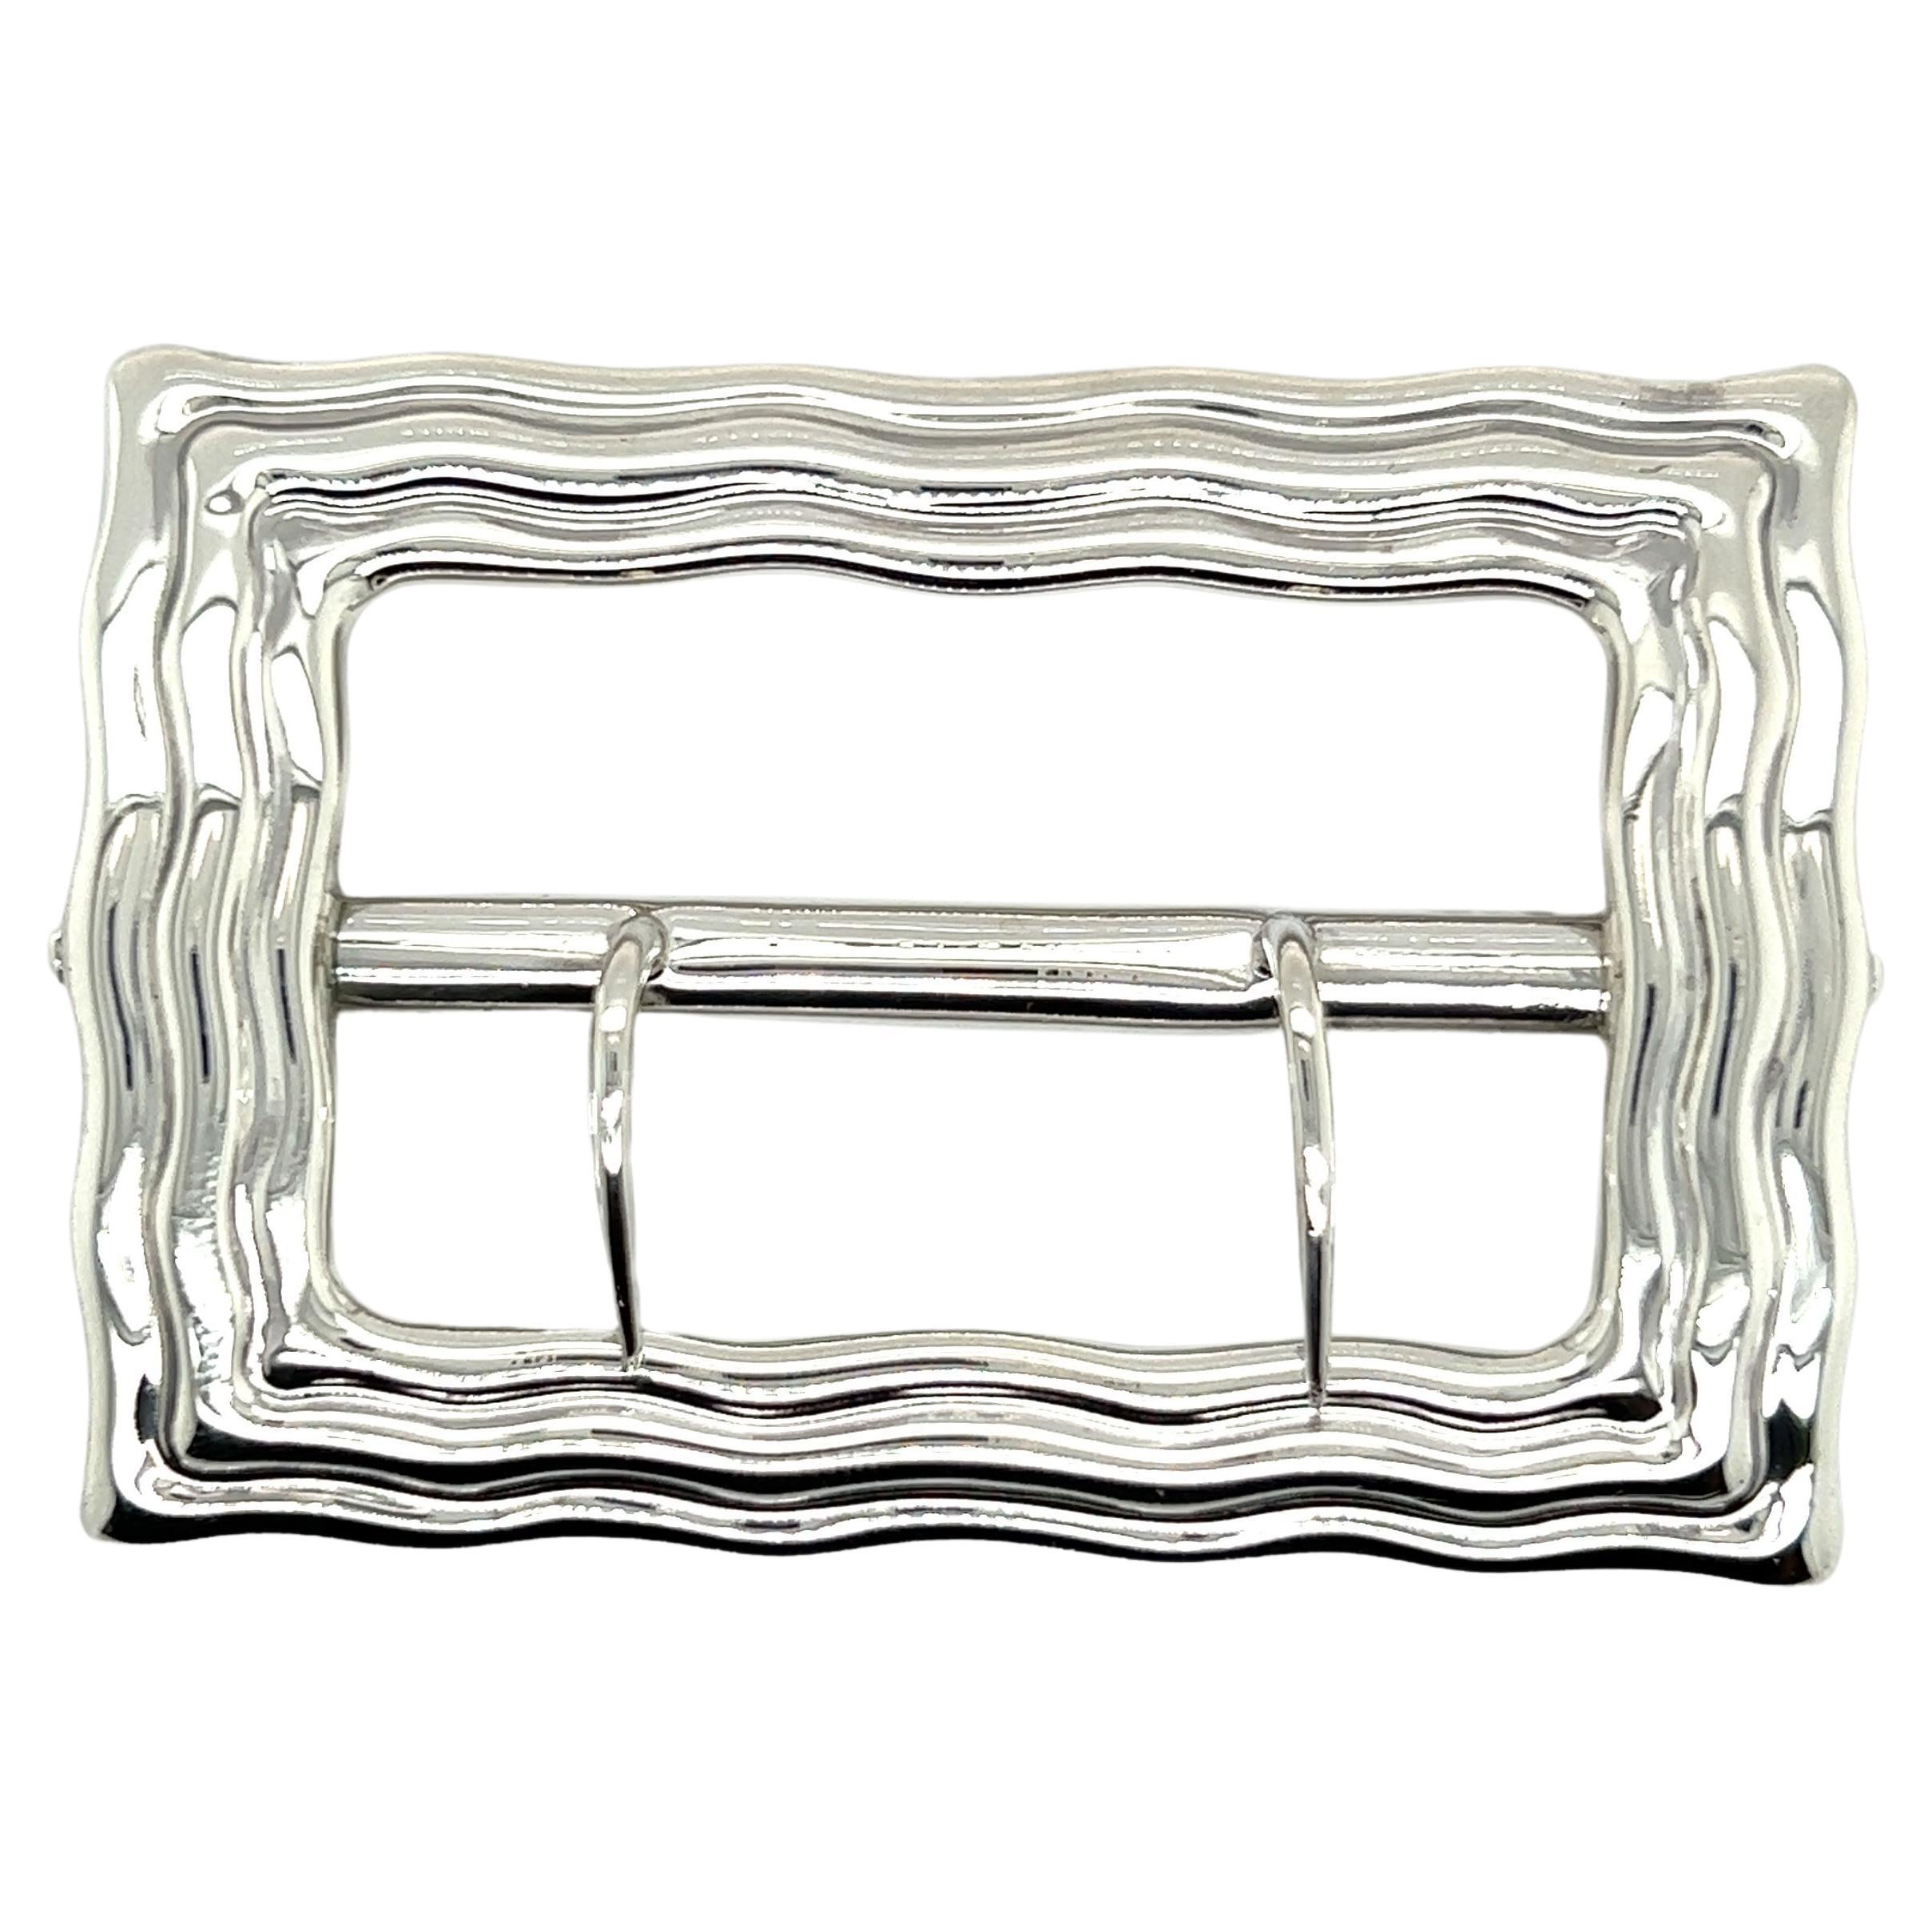 Tiffany & Co. Estate Belt Buckle Sterling Silver